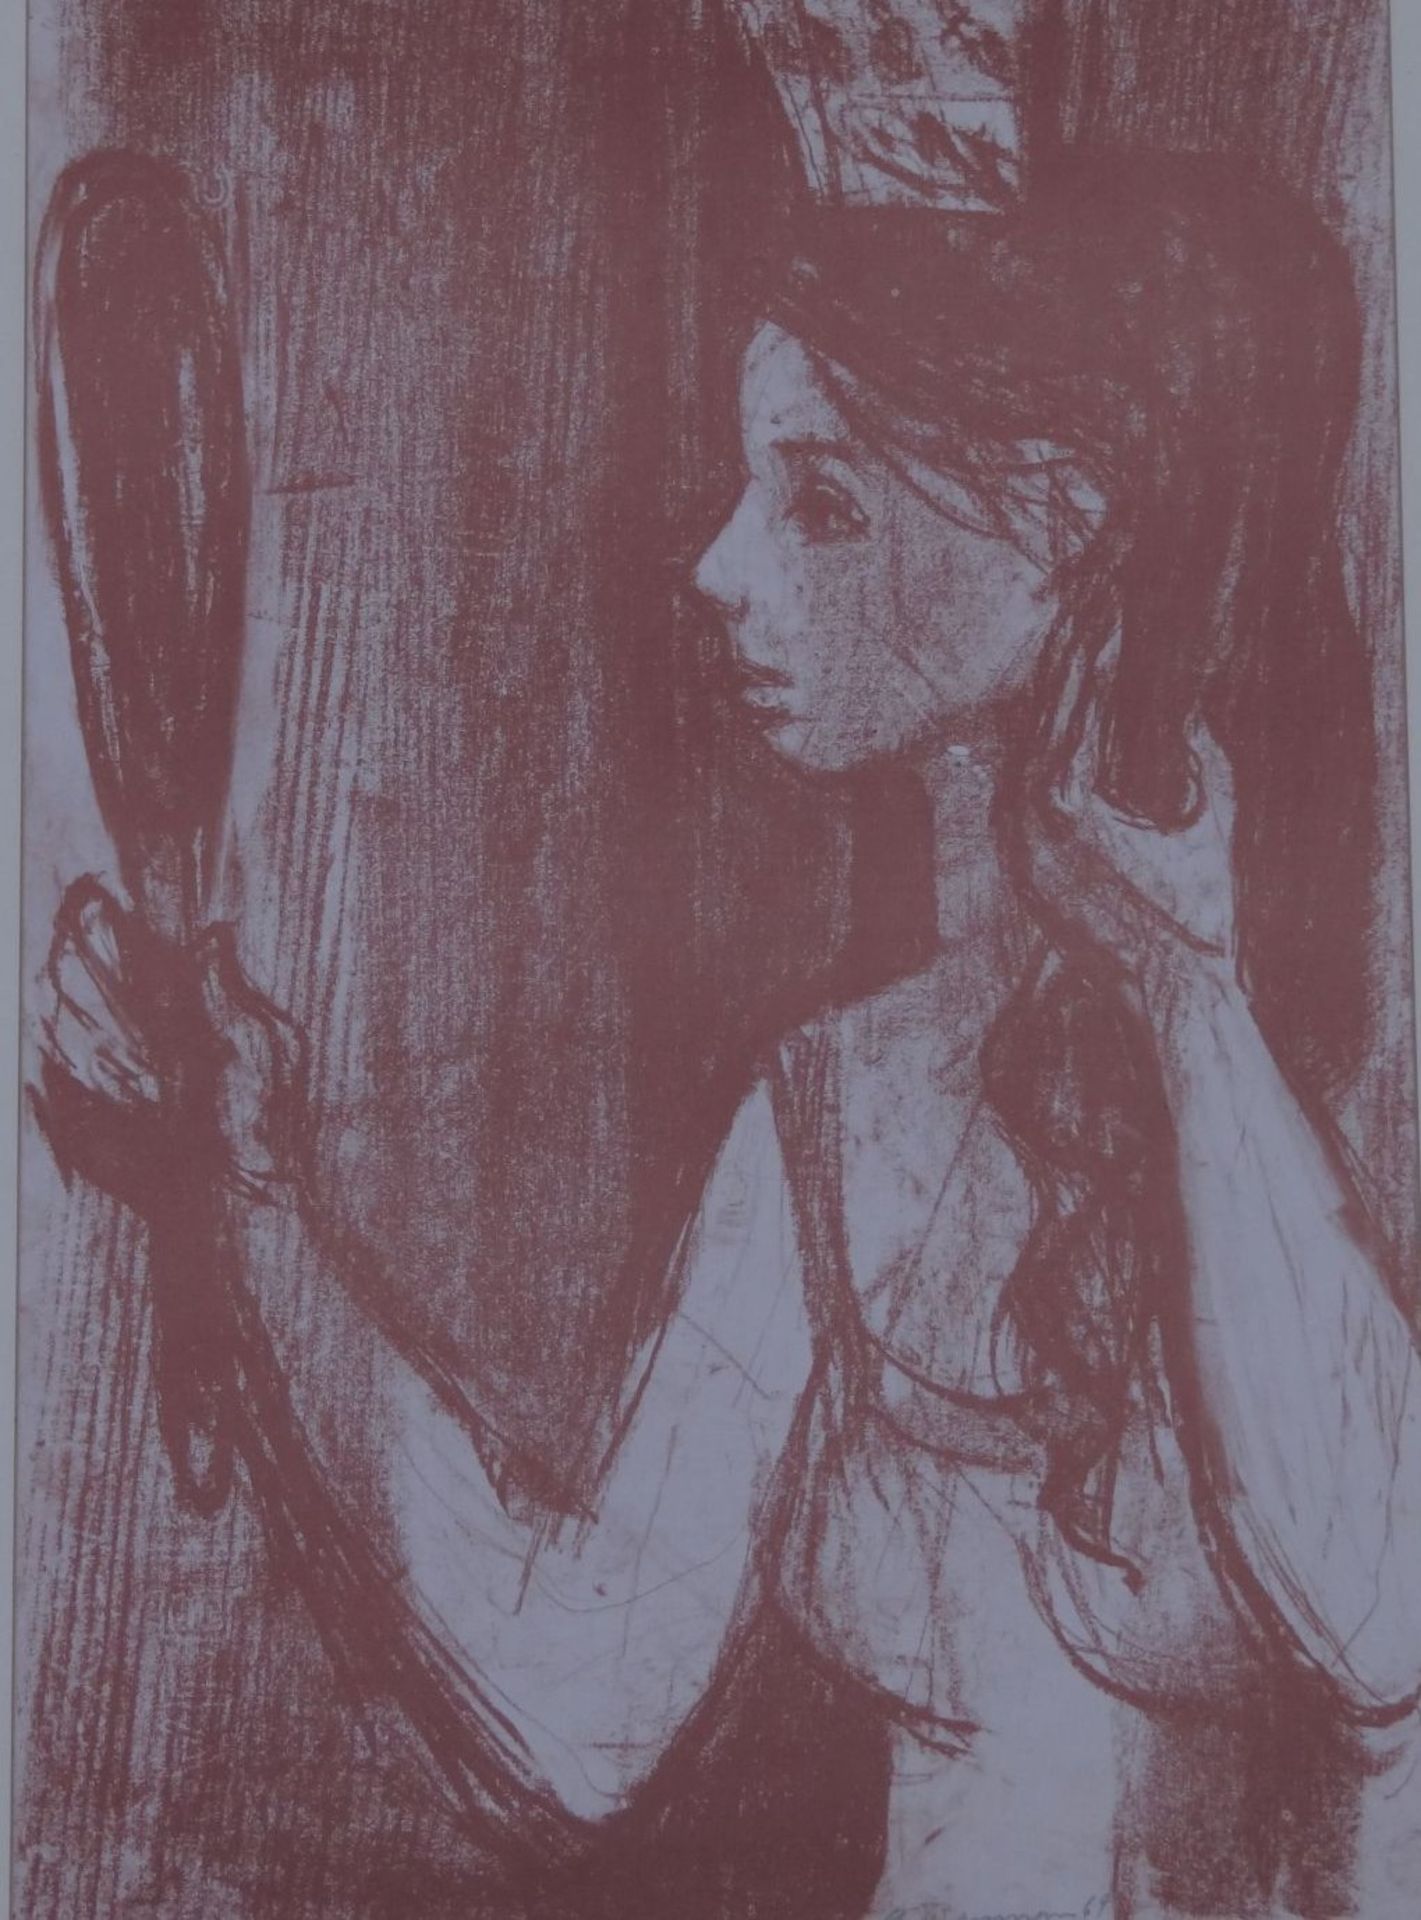 G. Baumann (oder ähnlich?), 1969 "Mädchen mit Spiegel" Lithografie, ger/Glas, RG 55x41